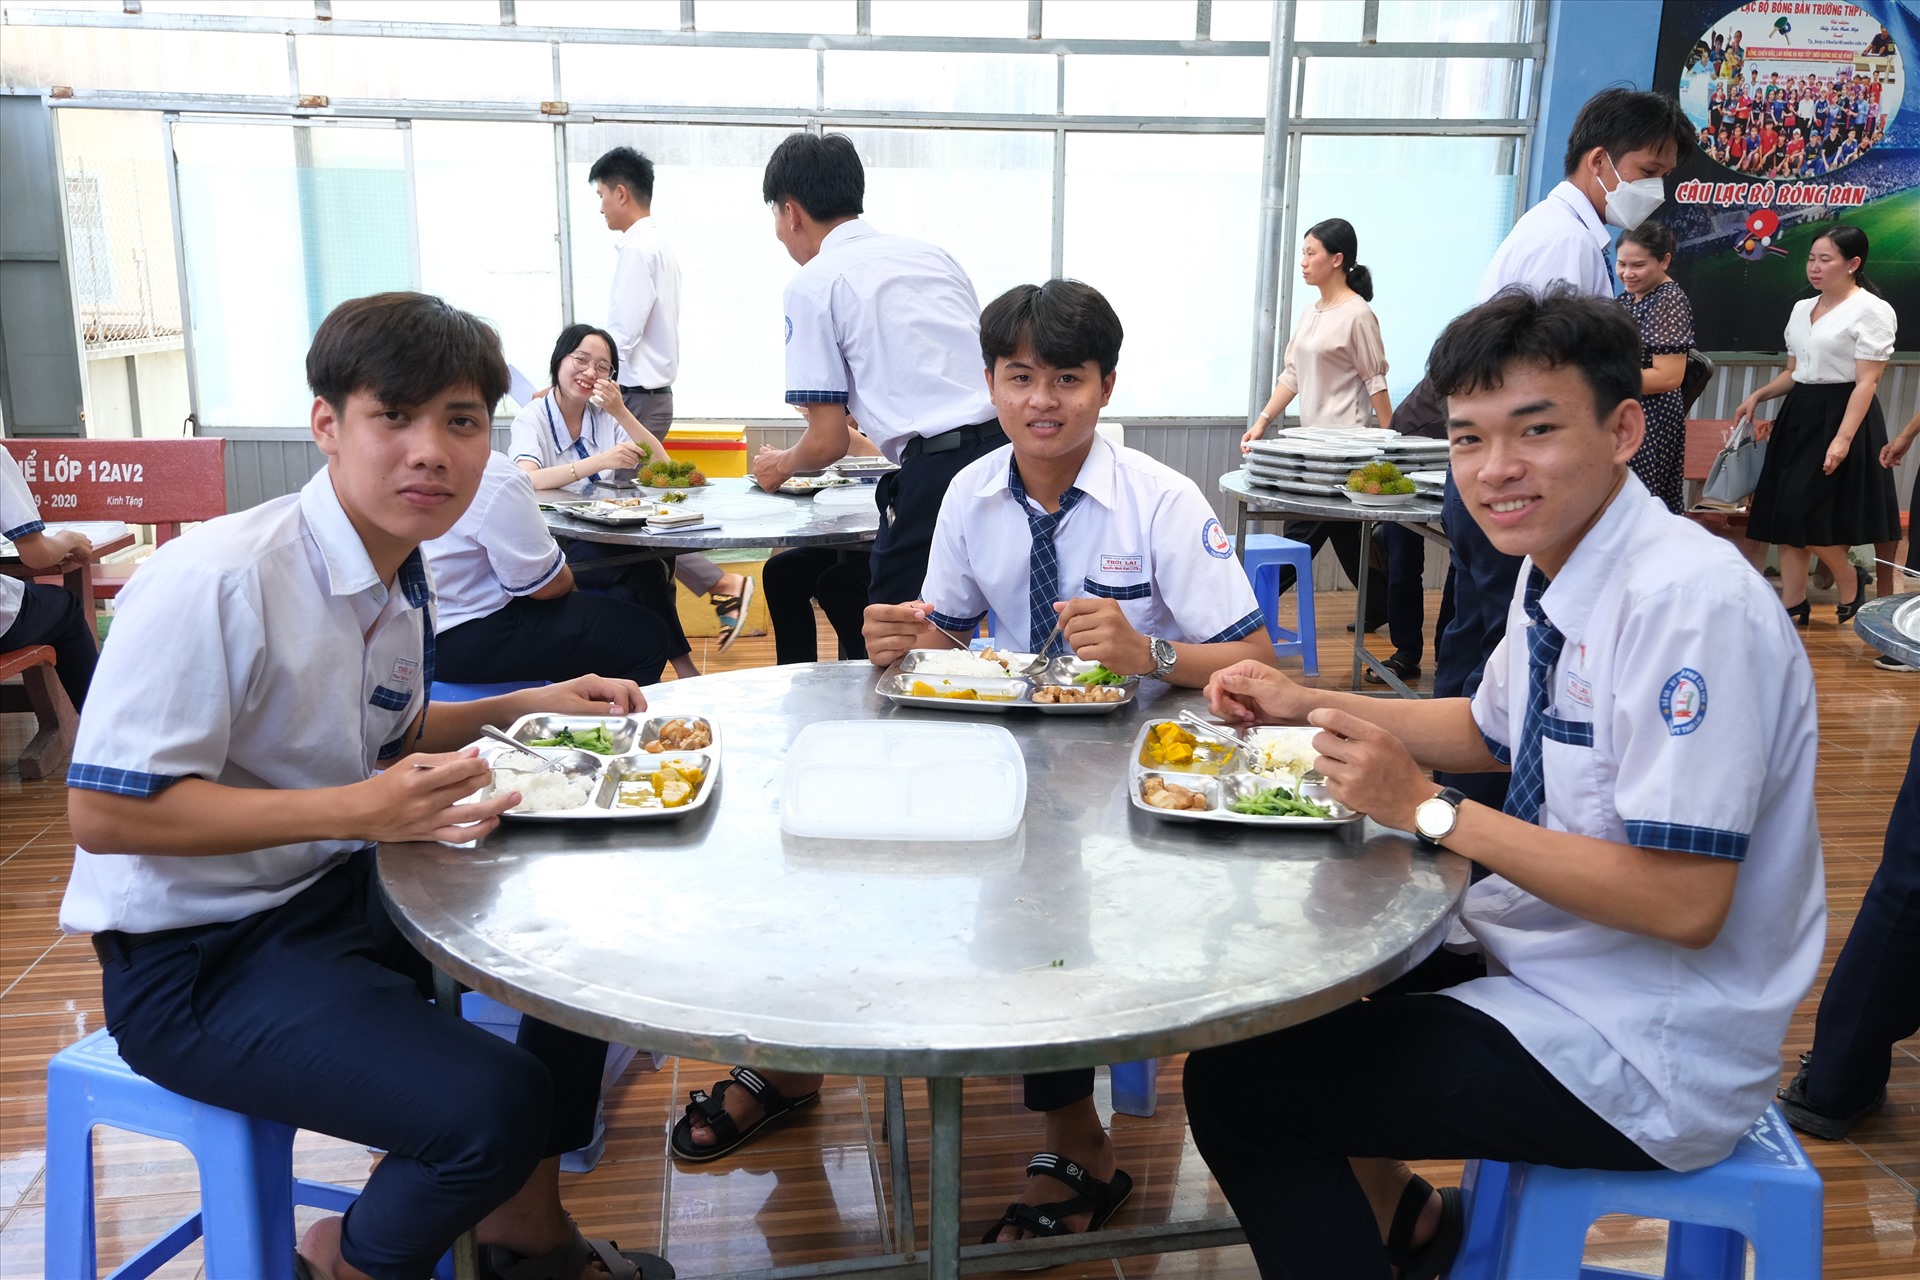 Học sinh 12 thưởng thức bữa ăn trưa miễn phí từ chính tay giáo viên nhà trường chuẩn bị. Ảnh: Phong Linh